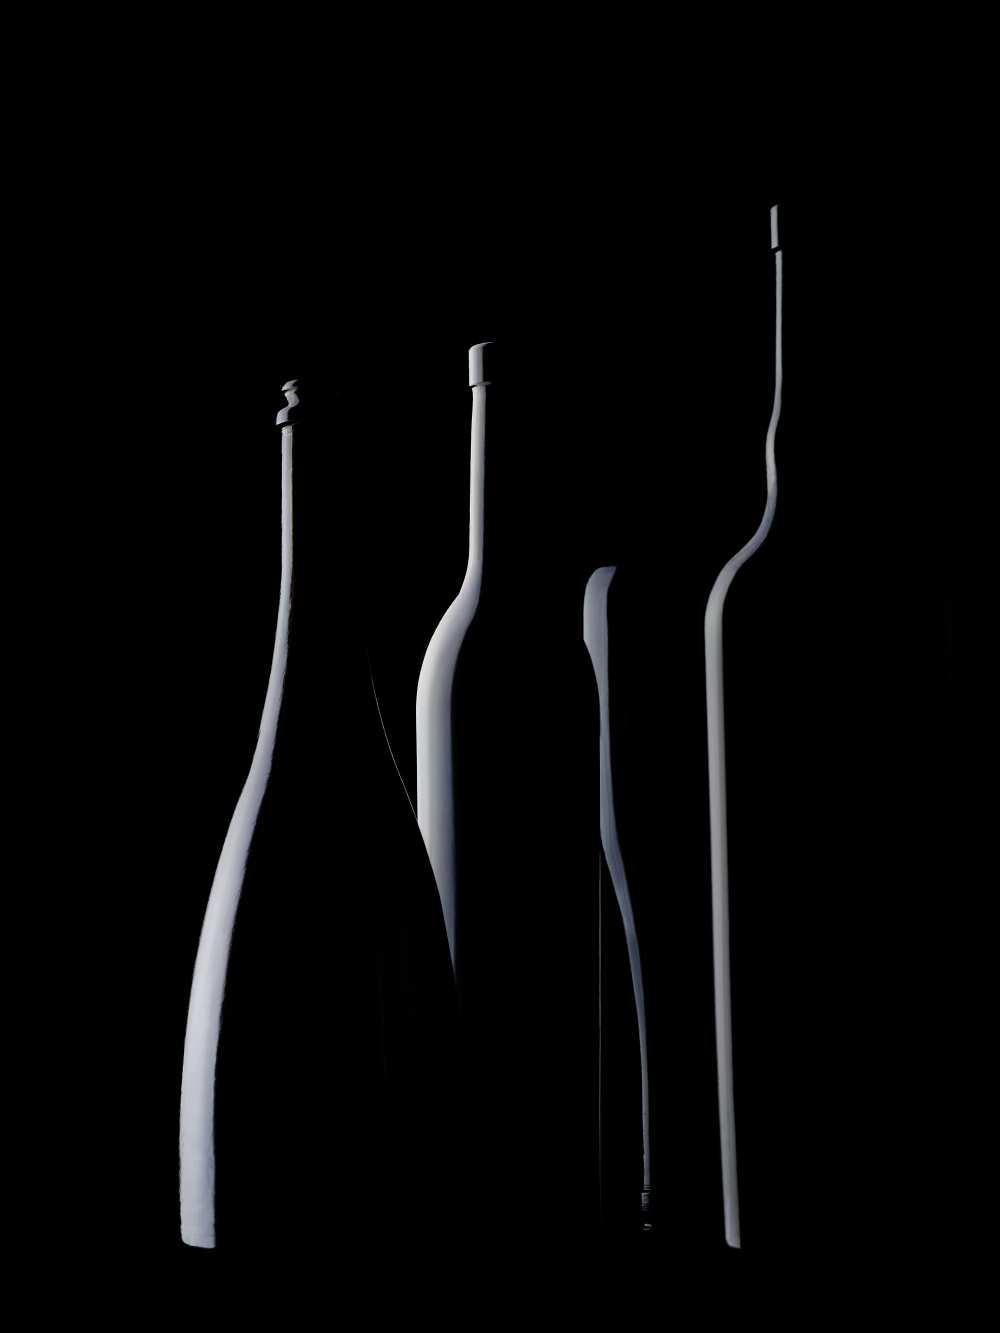 Bottles Waiting de Jorge Pena